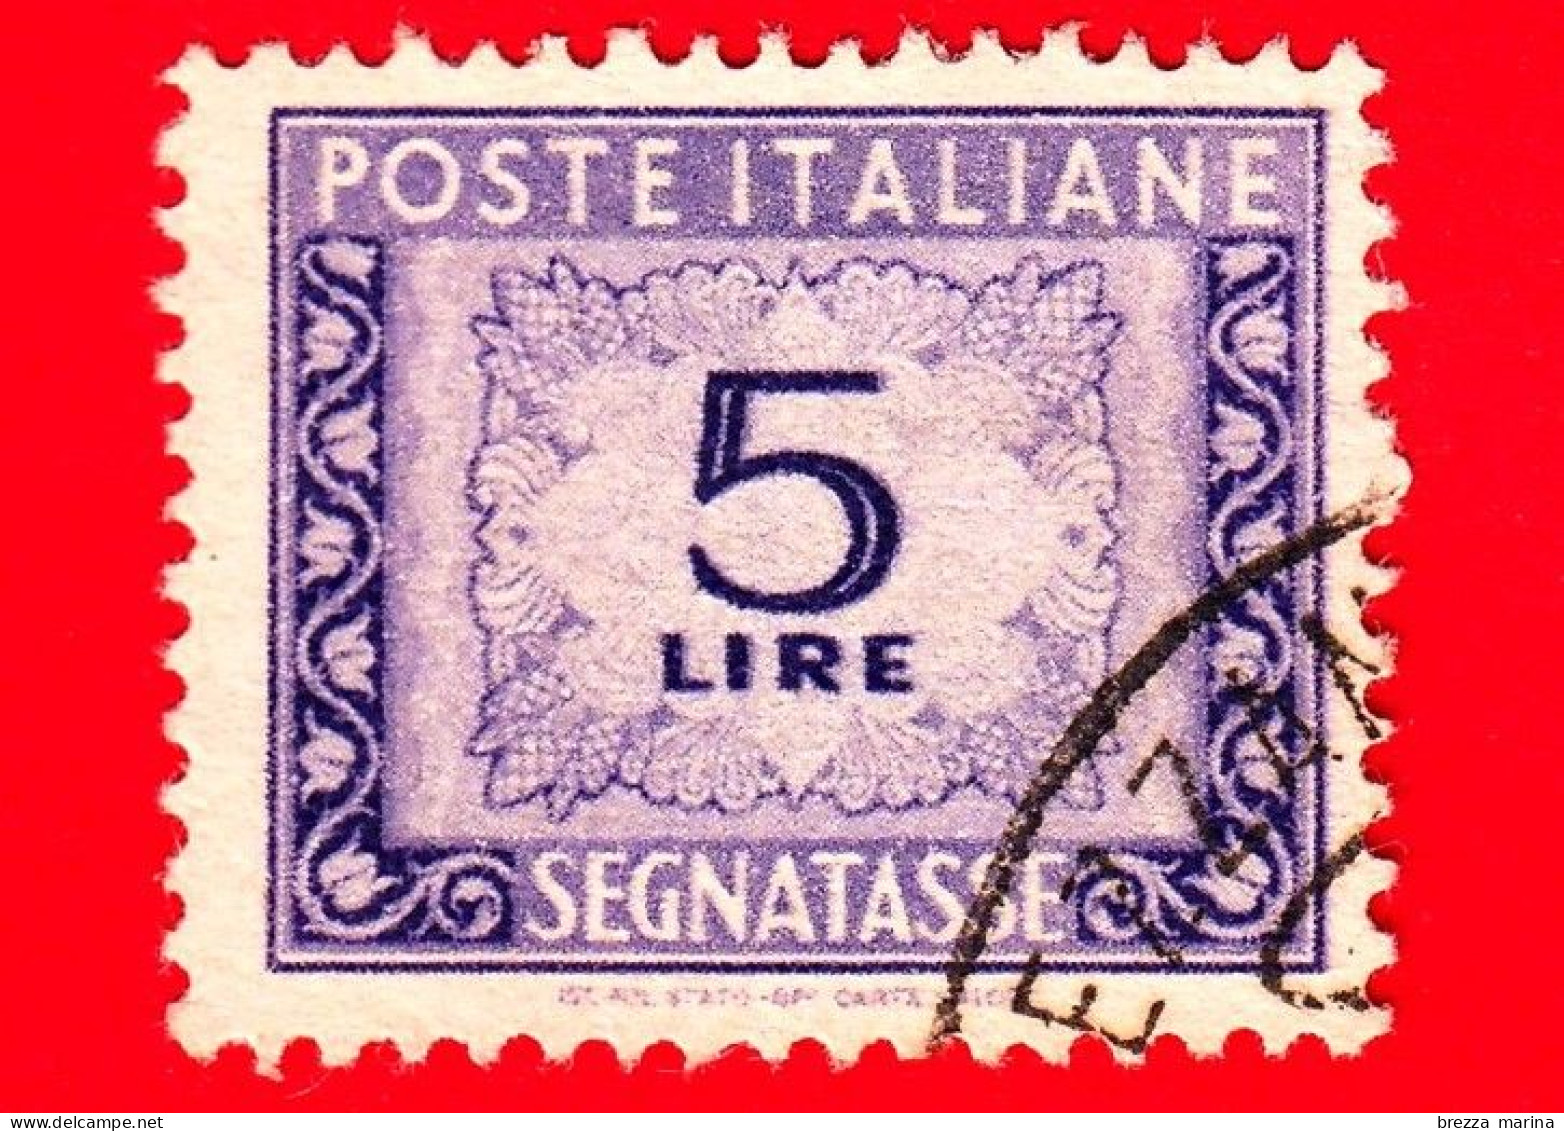 ITALIA - Usato - 1947 - Cifra E Decorazioni, Filigrana Ruota - Segnatasse - 5 L. • Cifra E Decorazioni - Taxe